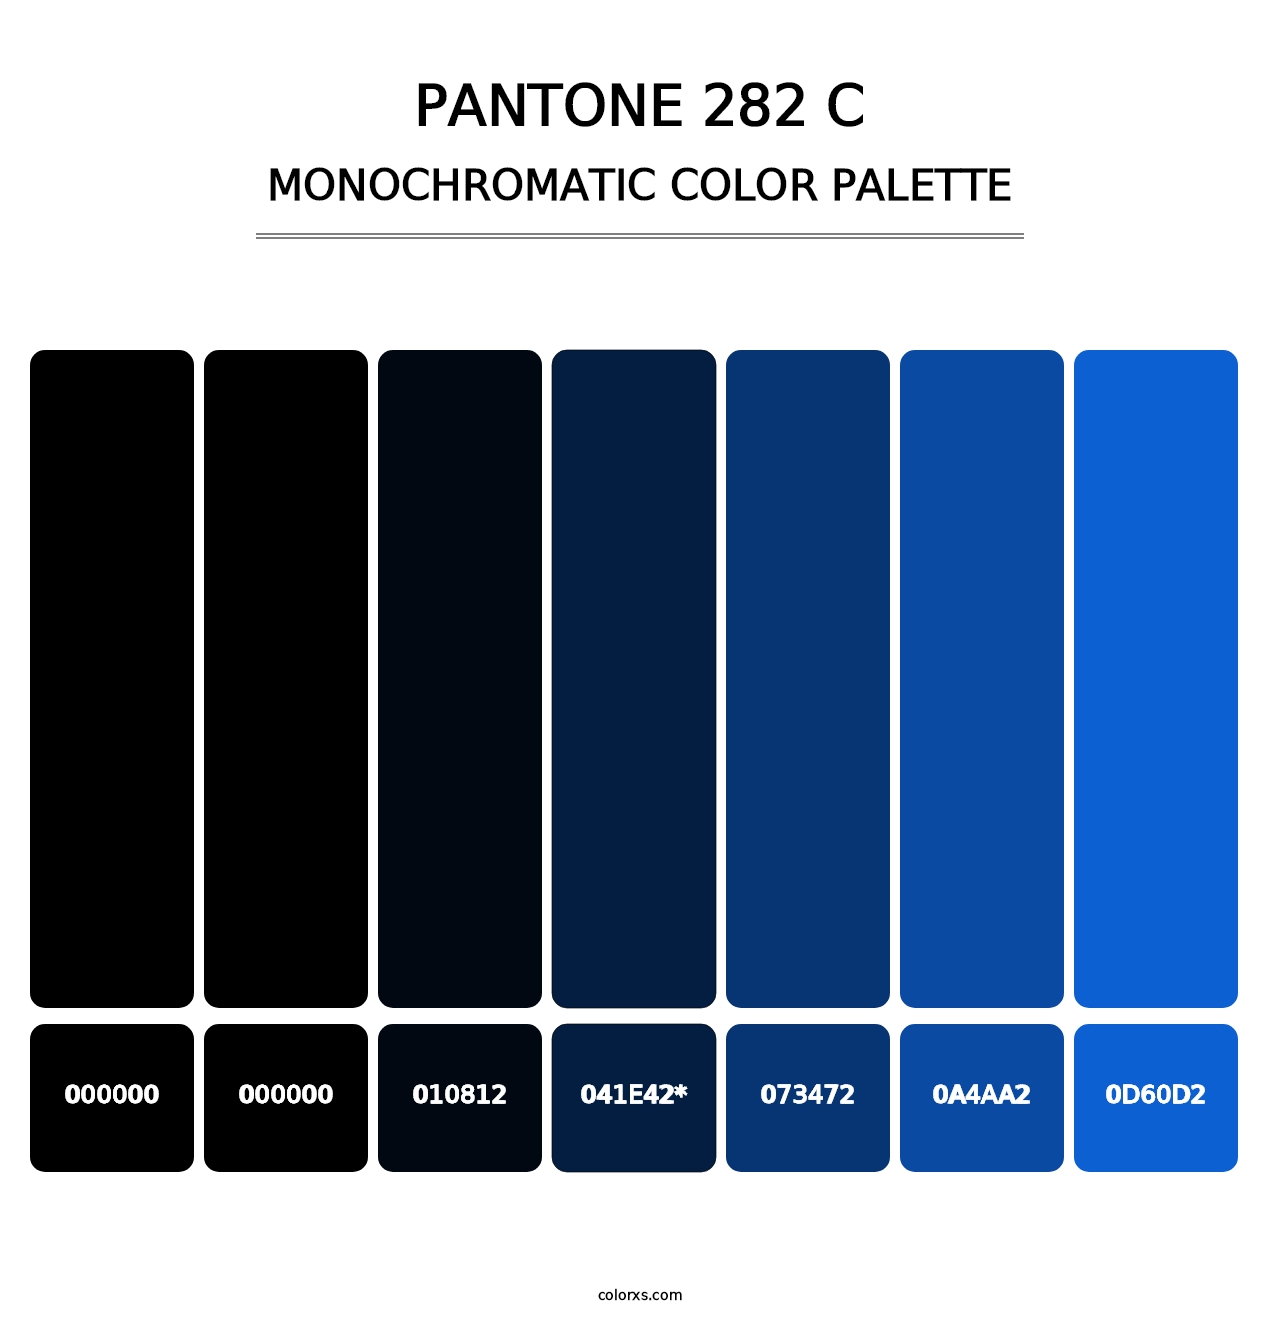 PANTONE 282 C - Monochromatic Color Palette